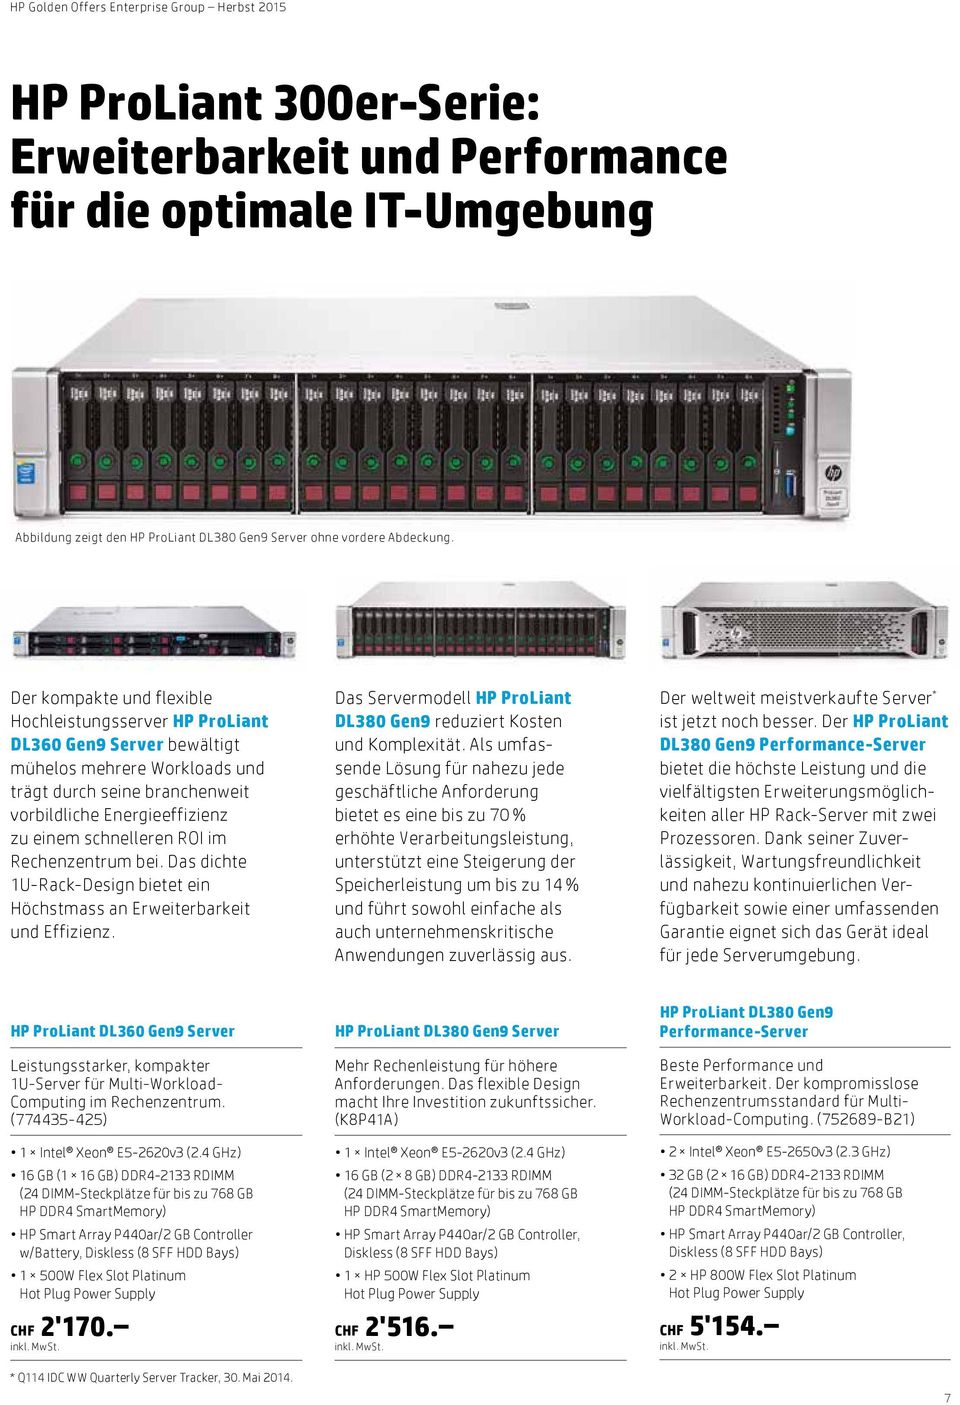 ROI im Rechenzentrum bei. Das dichte 1U-Rack-Design bietet ein Höchstmass an Erweiterbarkeit und Effizienz. Das Servermodell HP ProLiant DL380 Gen9 reduziert Kosten und Komplexität.